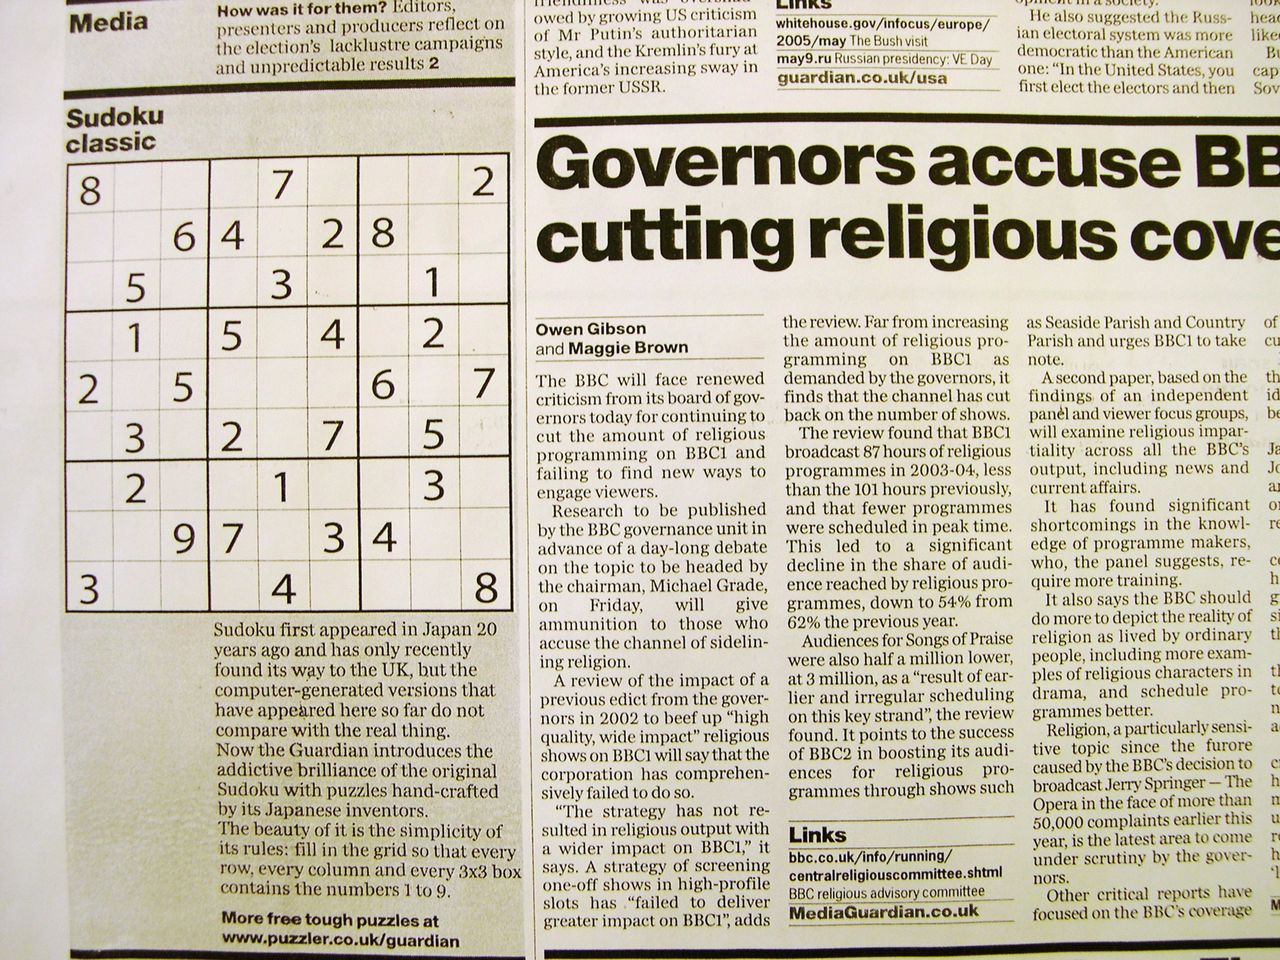 Колонка судоку в британской газете «Гардиан» (снимок сделан 15 мая 2005 г. © Jiji Press)